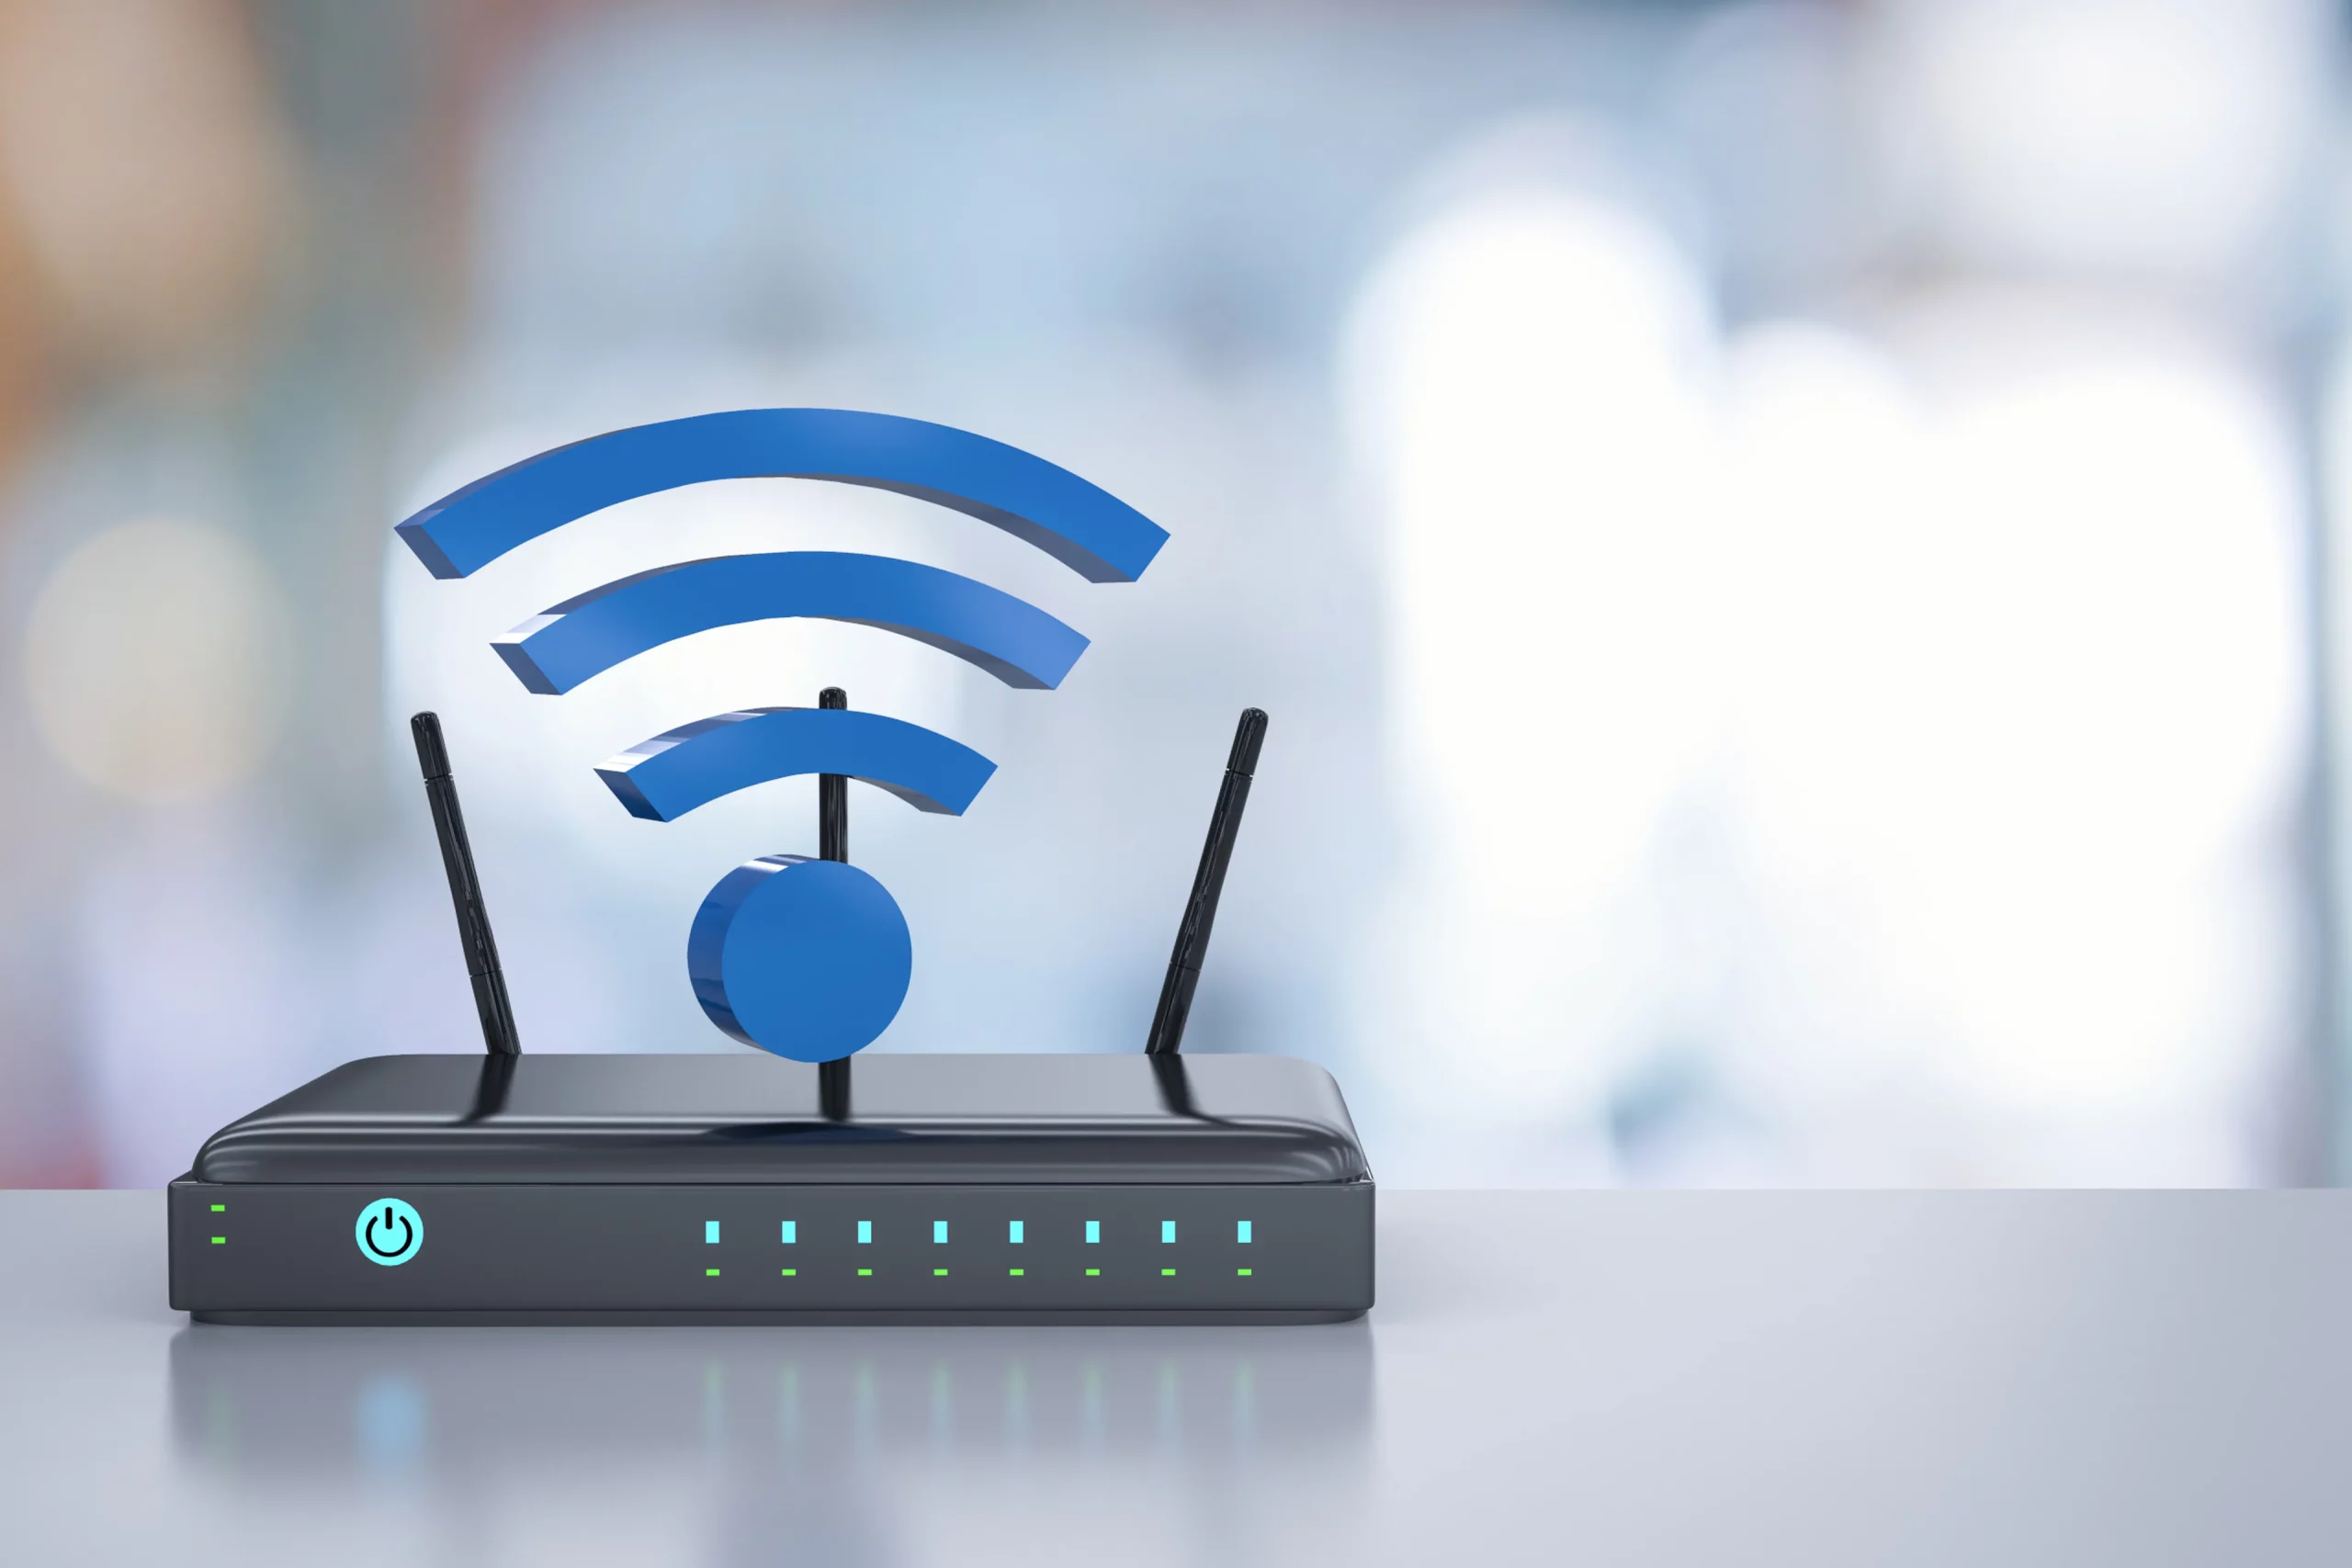 Aprende a desactivar 802.11b/g en tu router para mejorar la velocidad WiFi